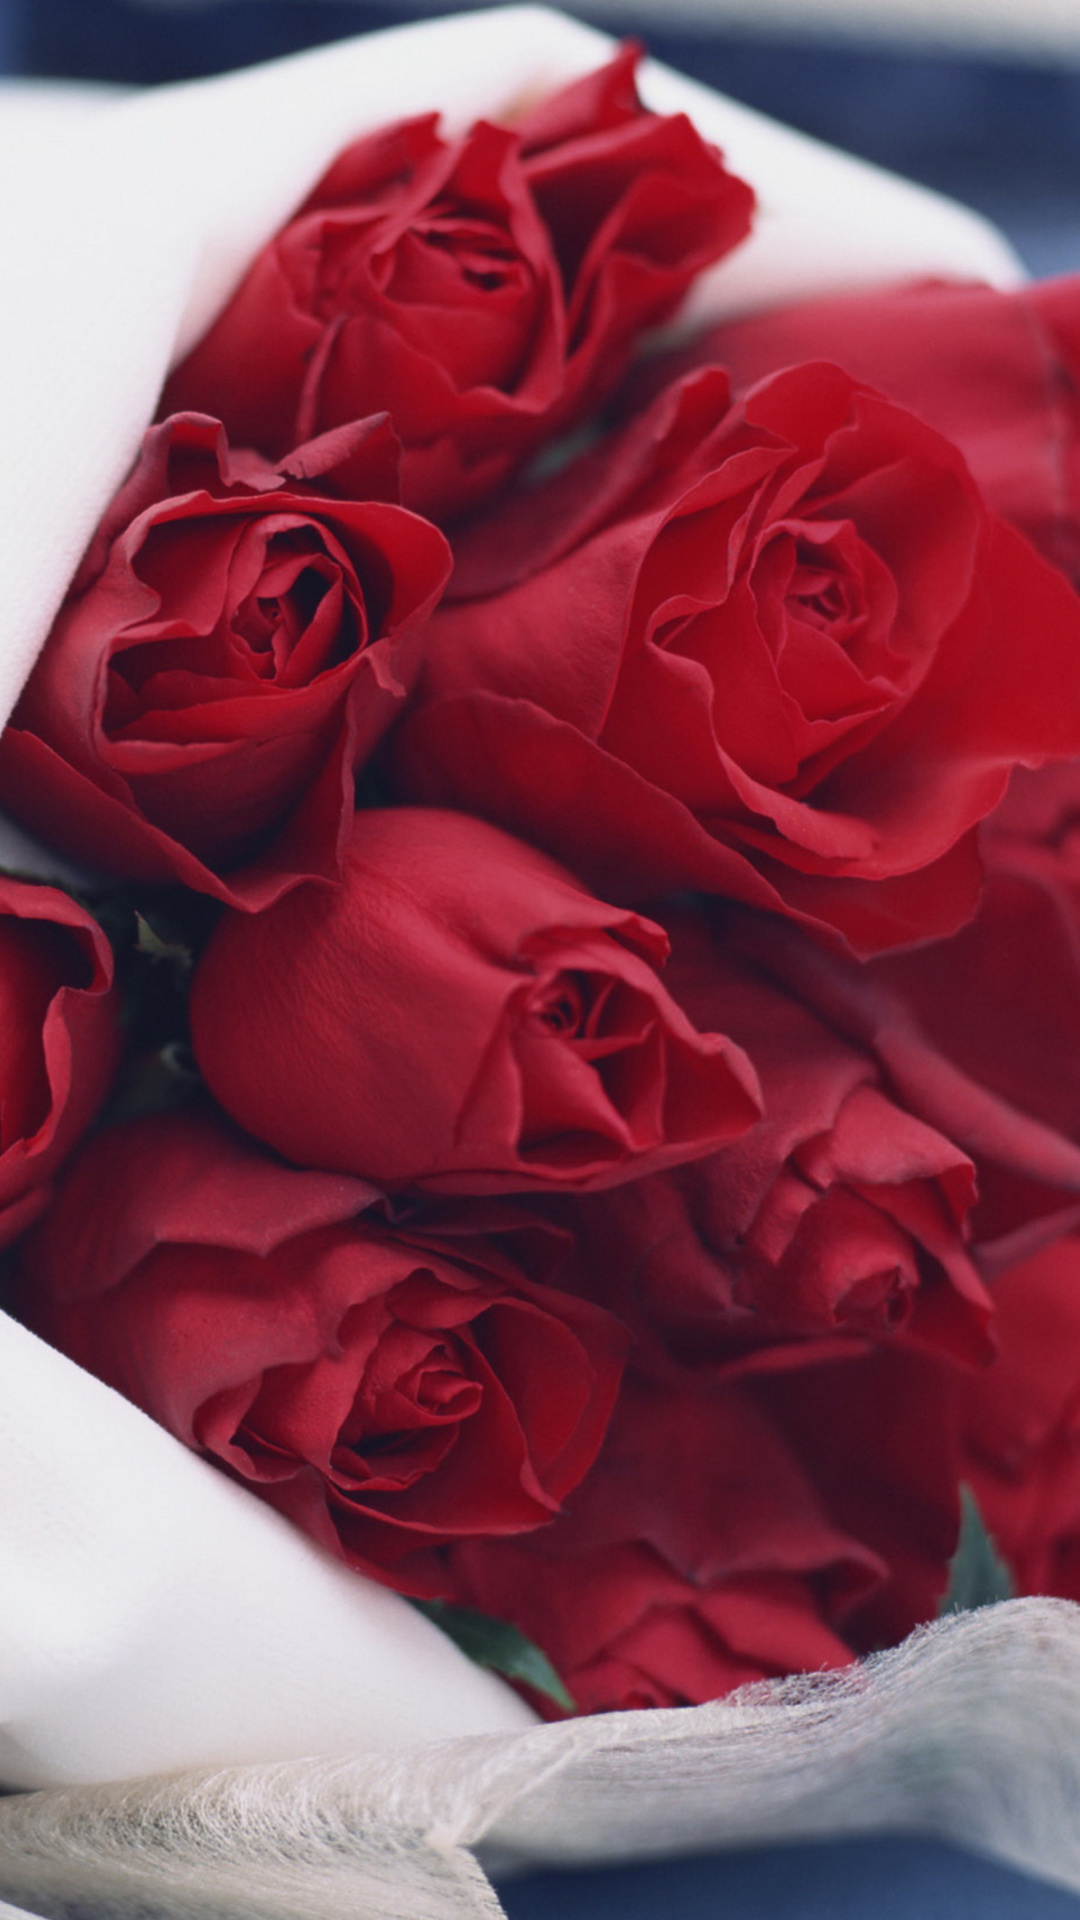 Das Bouquet Passion Roses Wallpaper 1080x1920